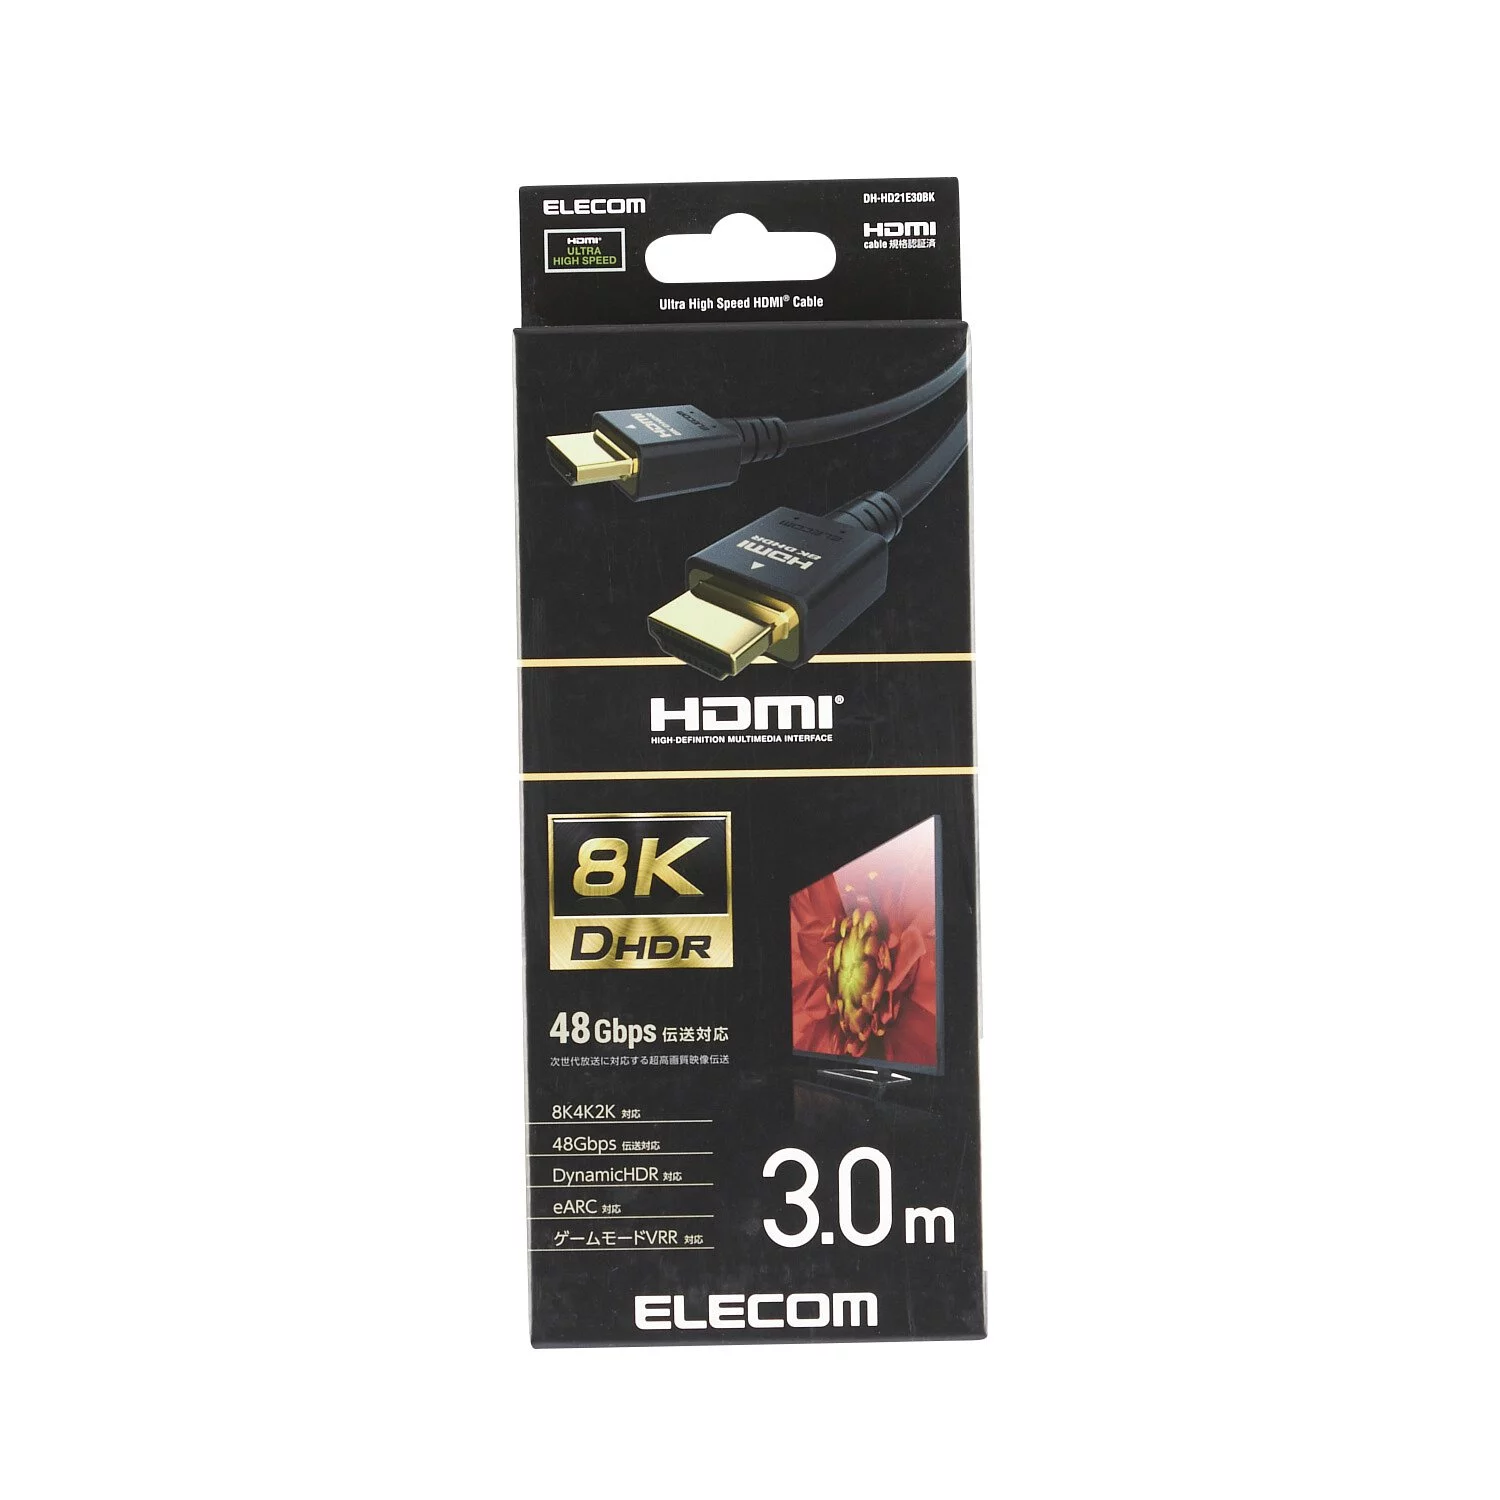 Elecom 3m 8K高清 Ultra High Speed HDMI線 #DH-HD21E30BK